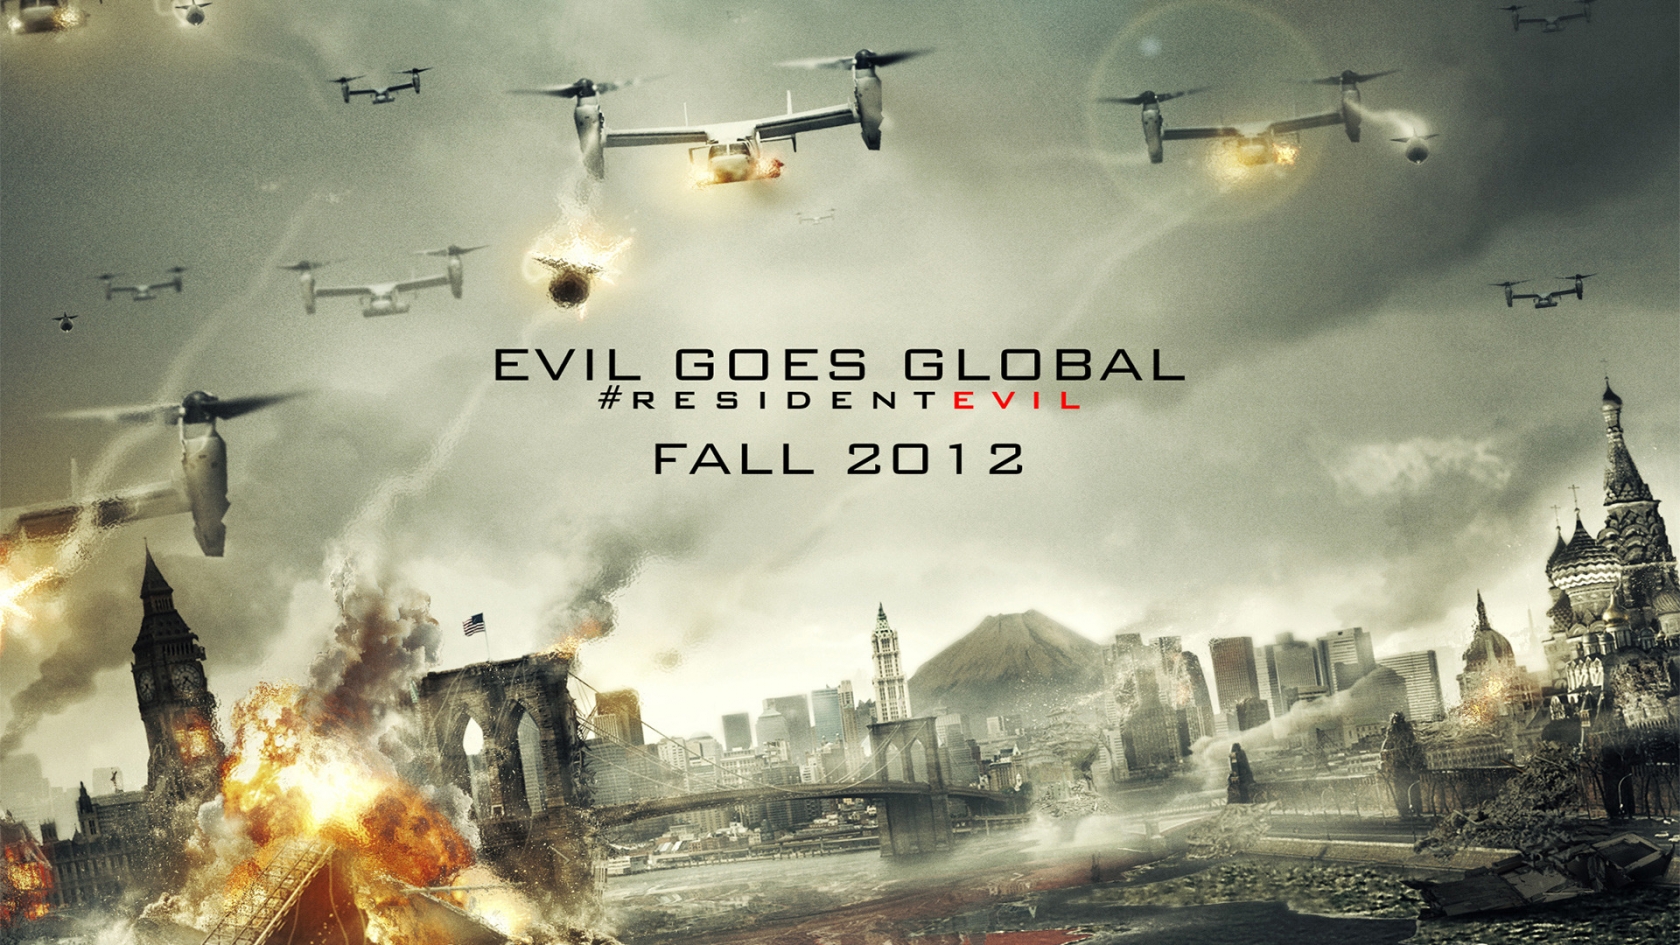 Resident Evil 2012 for 1680 x 945 HDTV resolution